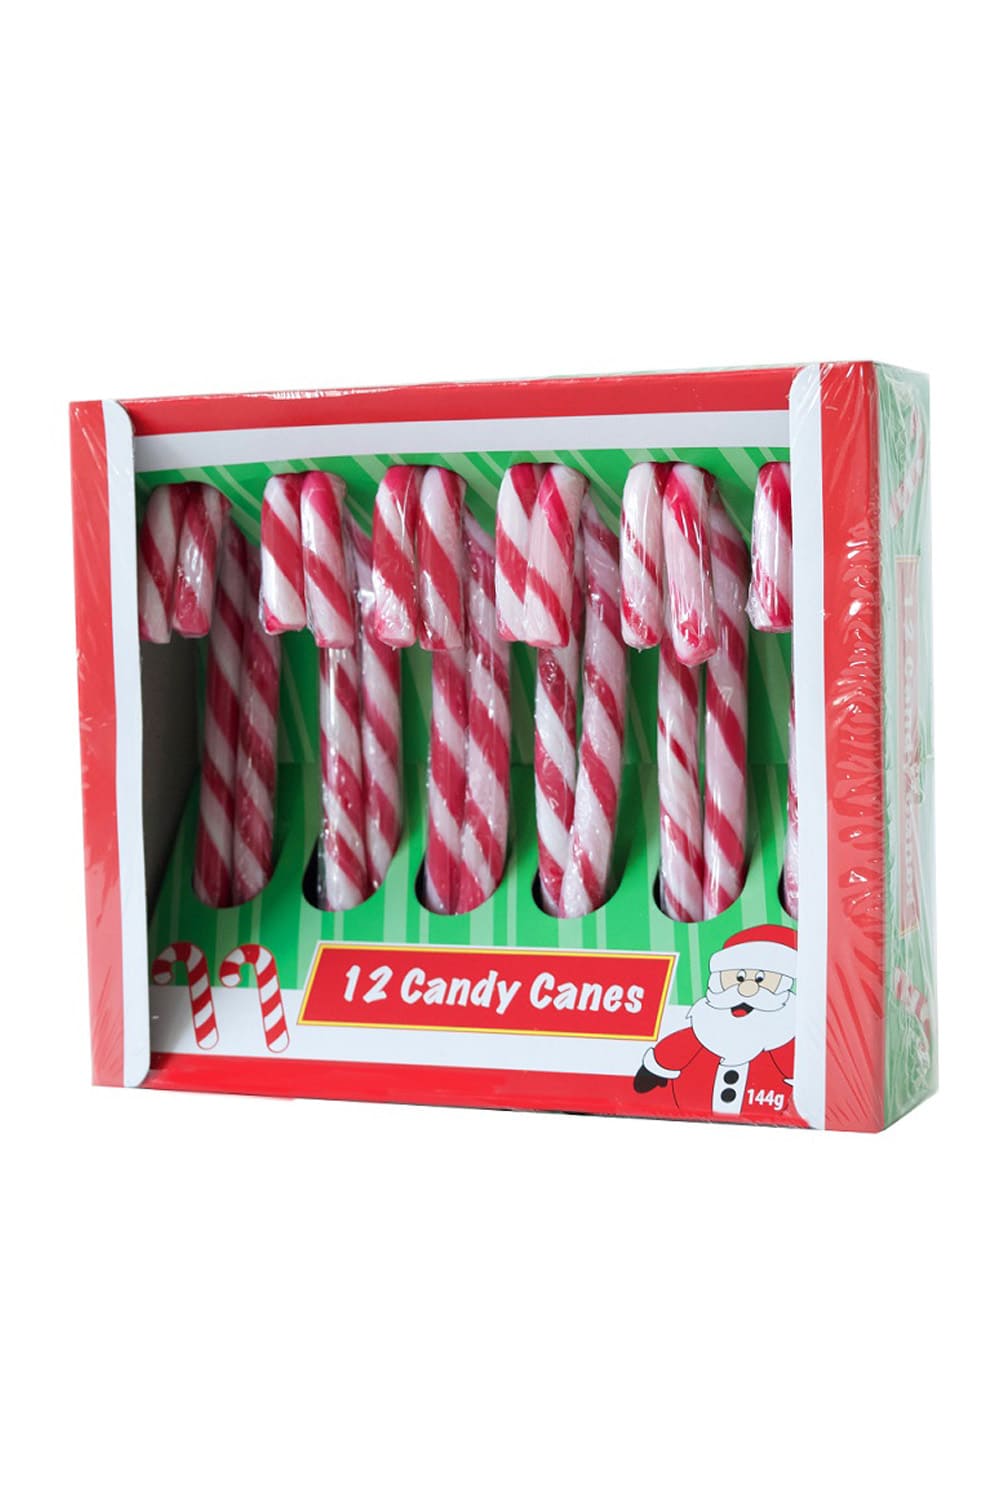 Zuckerstangen im 12er Set fuer die Weihnachtszeit. rot-weisse Zuckerstoecke für den Samichlaus Tag oder die Adventszeit und Weihnachtzeit. 12 Candy Canes